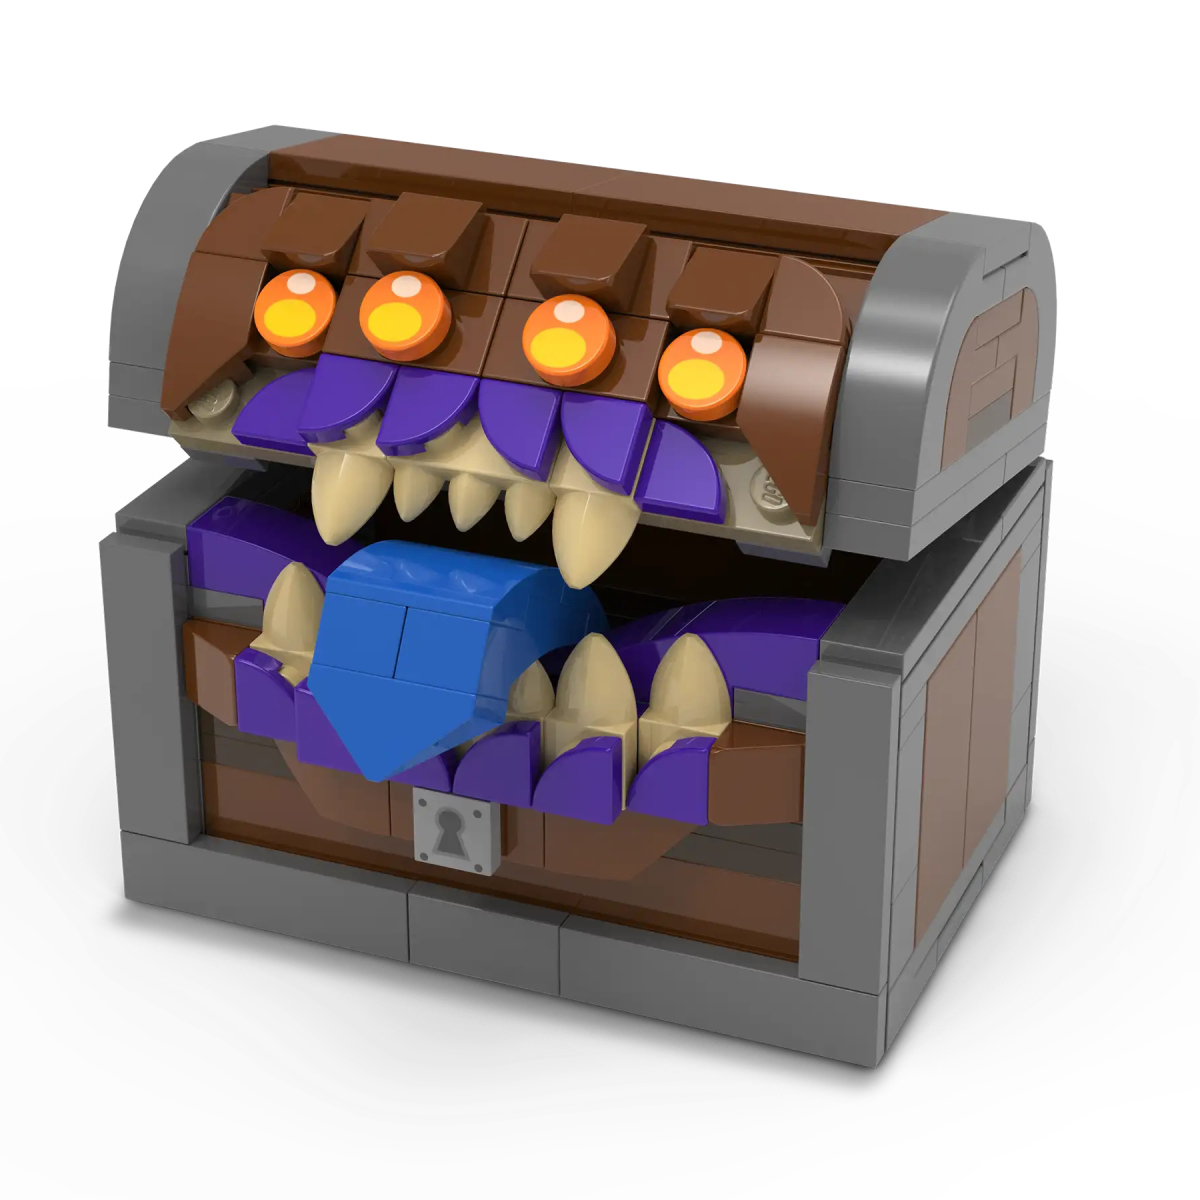 LEGO 5008325「龍與地下城寶箱怪骰子收納盒」滿額禮情報公開 